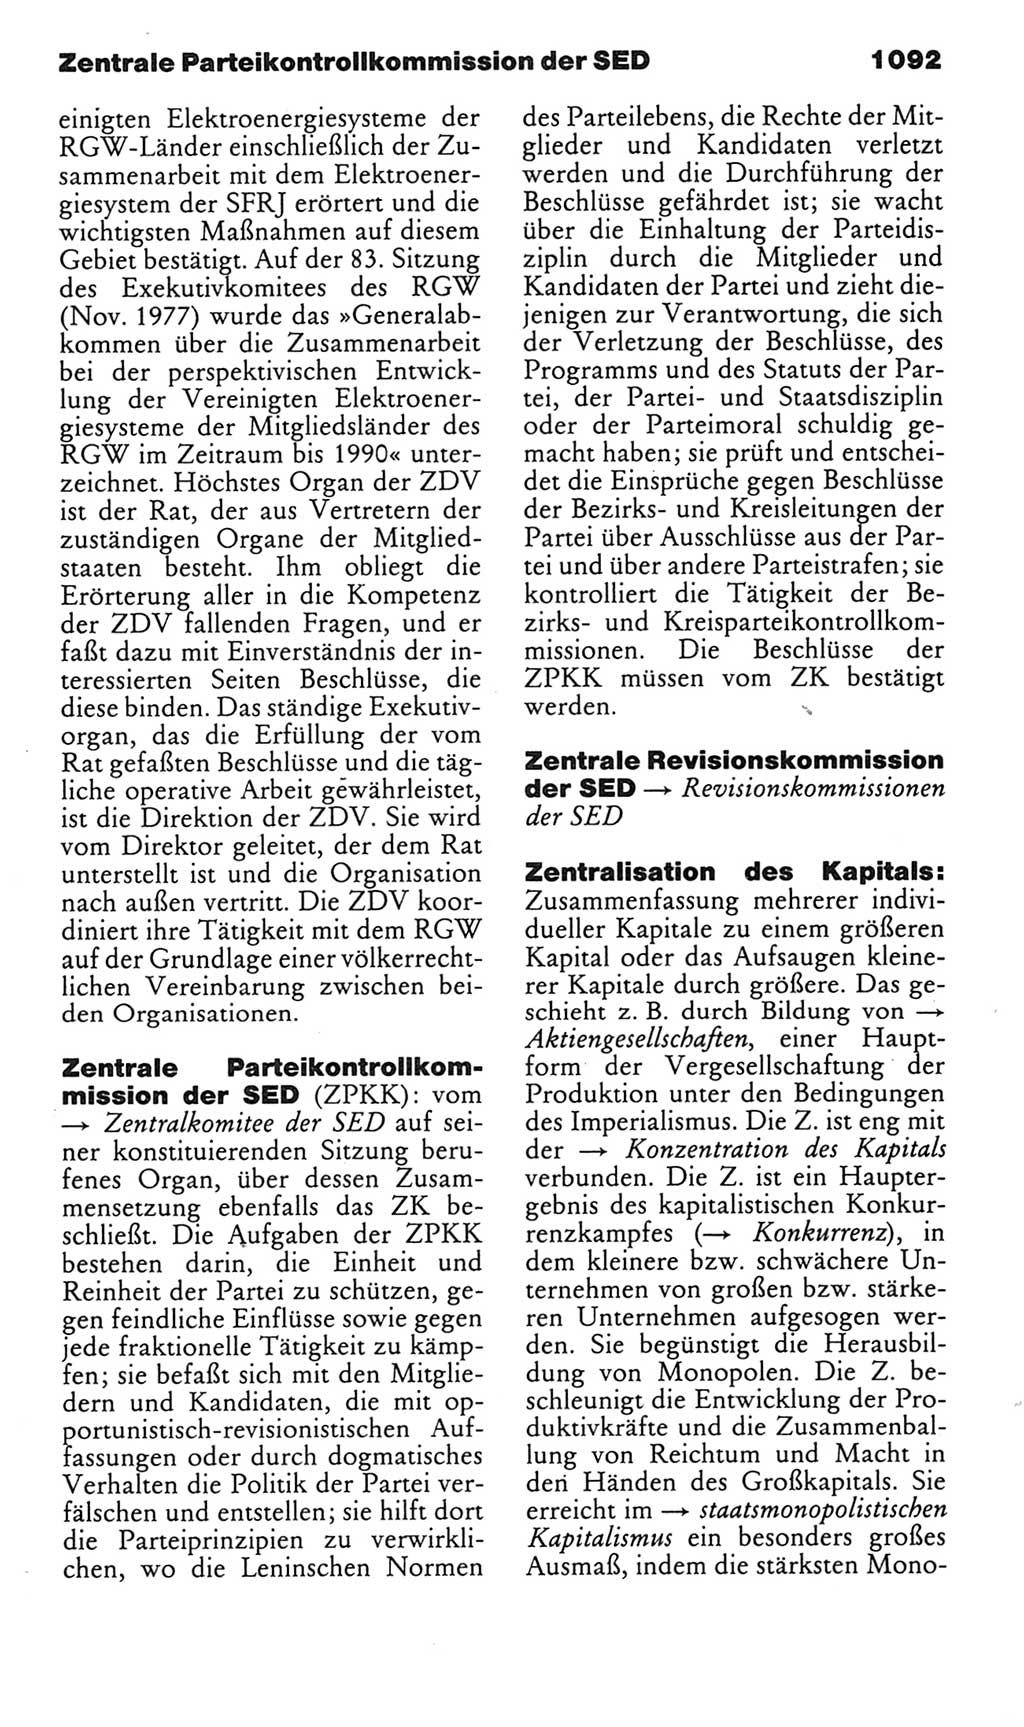 Kleines politisches Wörterbuch [Deutsche Demokratische Republik (DDR)] 1985, Seite 1092 (Kl. pol. Wb. DDR 1985, S. 1092)